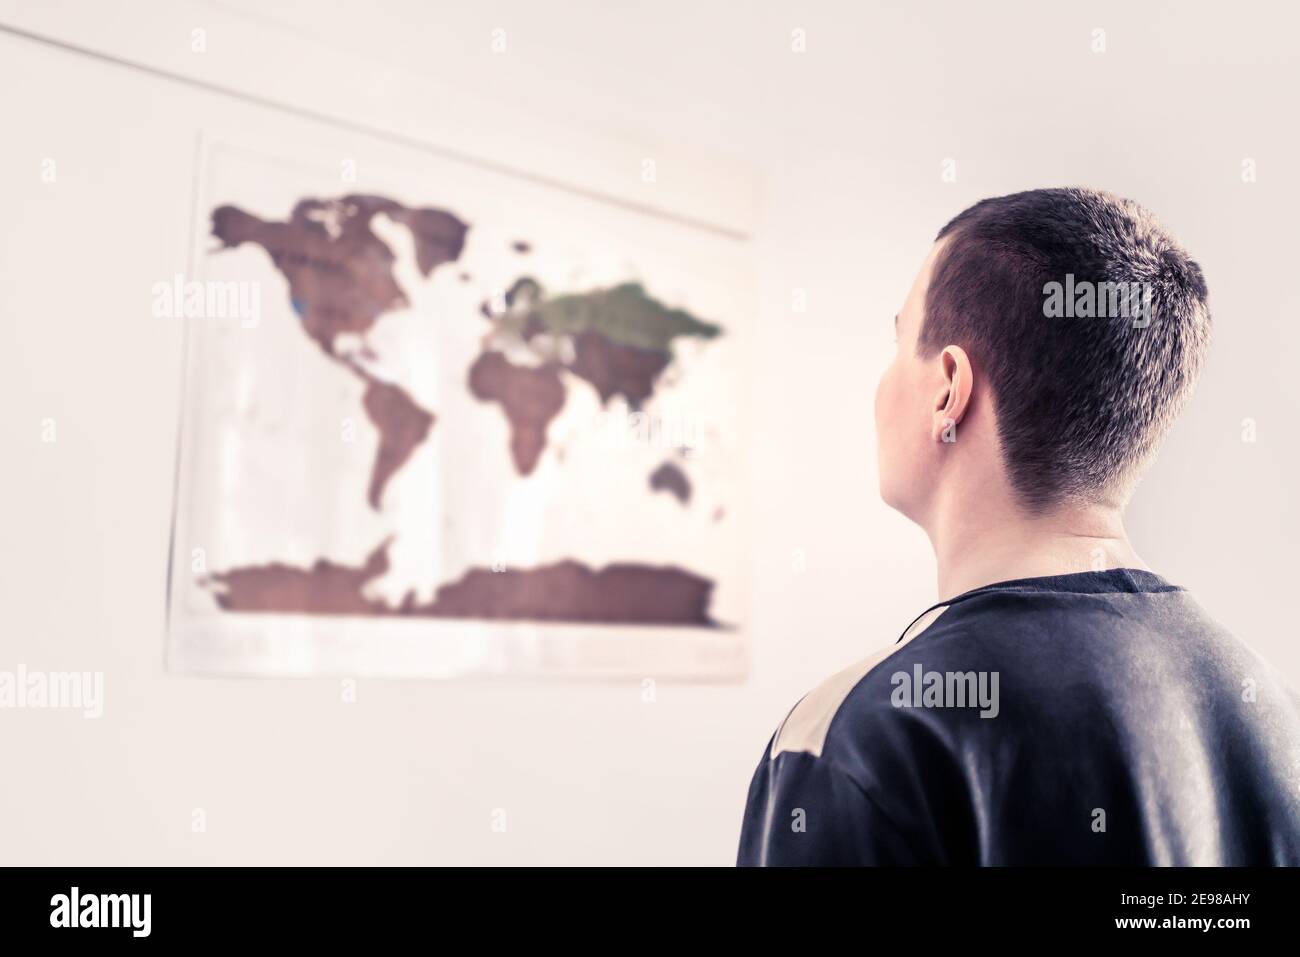 Homme regardant une carte du monde sur le mur. Penser à un environnement en évolution, à un avenir incertain ou à des problèmes mondiaux. Égalité mondiale, droits de l'homme. Banque D'Images